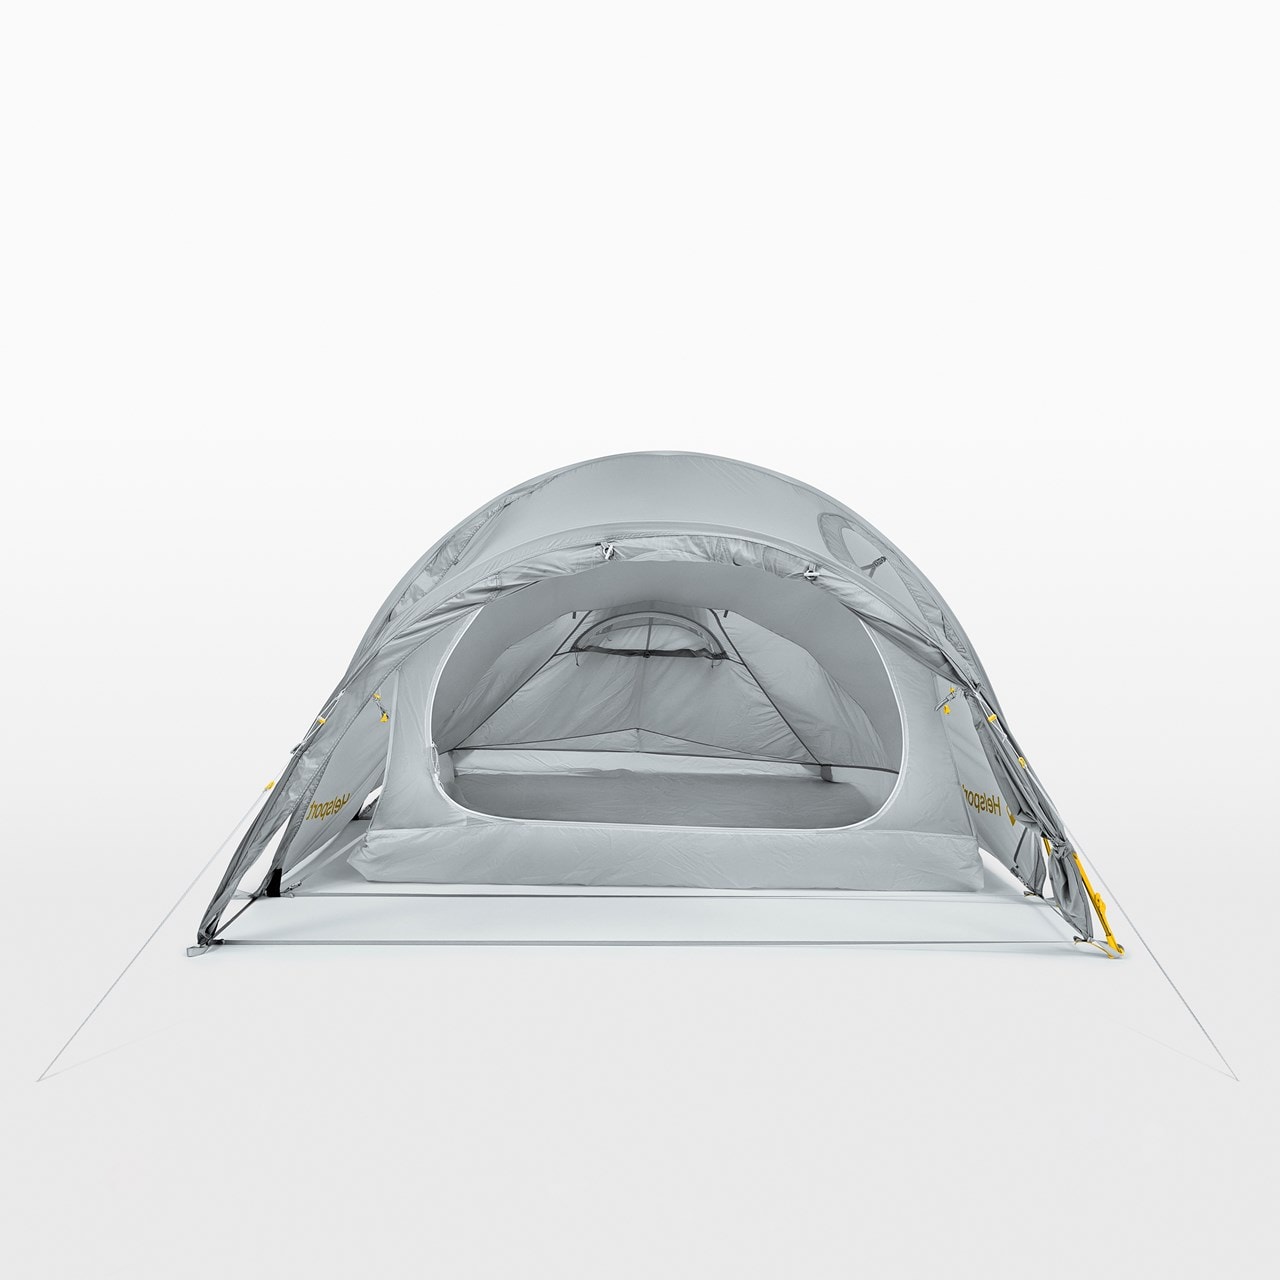 Helsport Adventure Lofoten SL 3 Tent